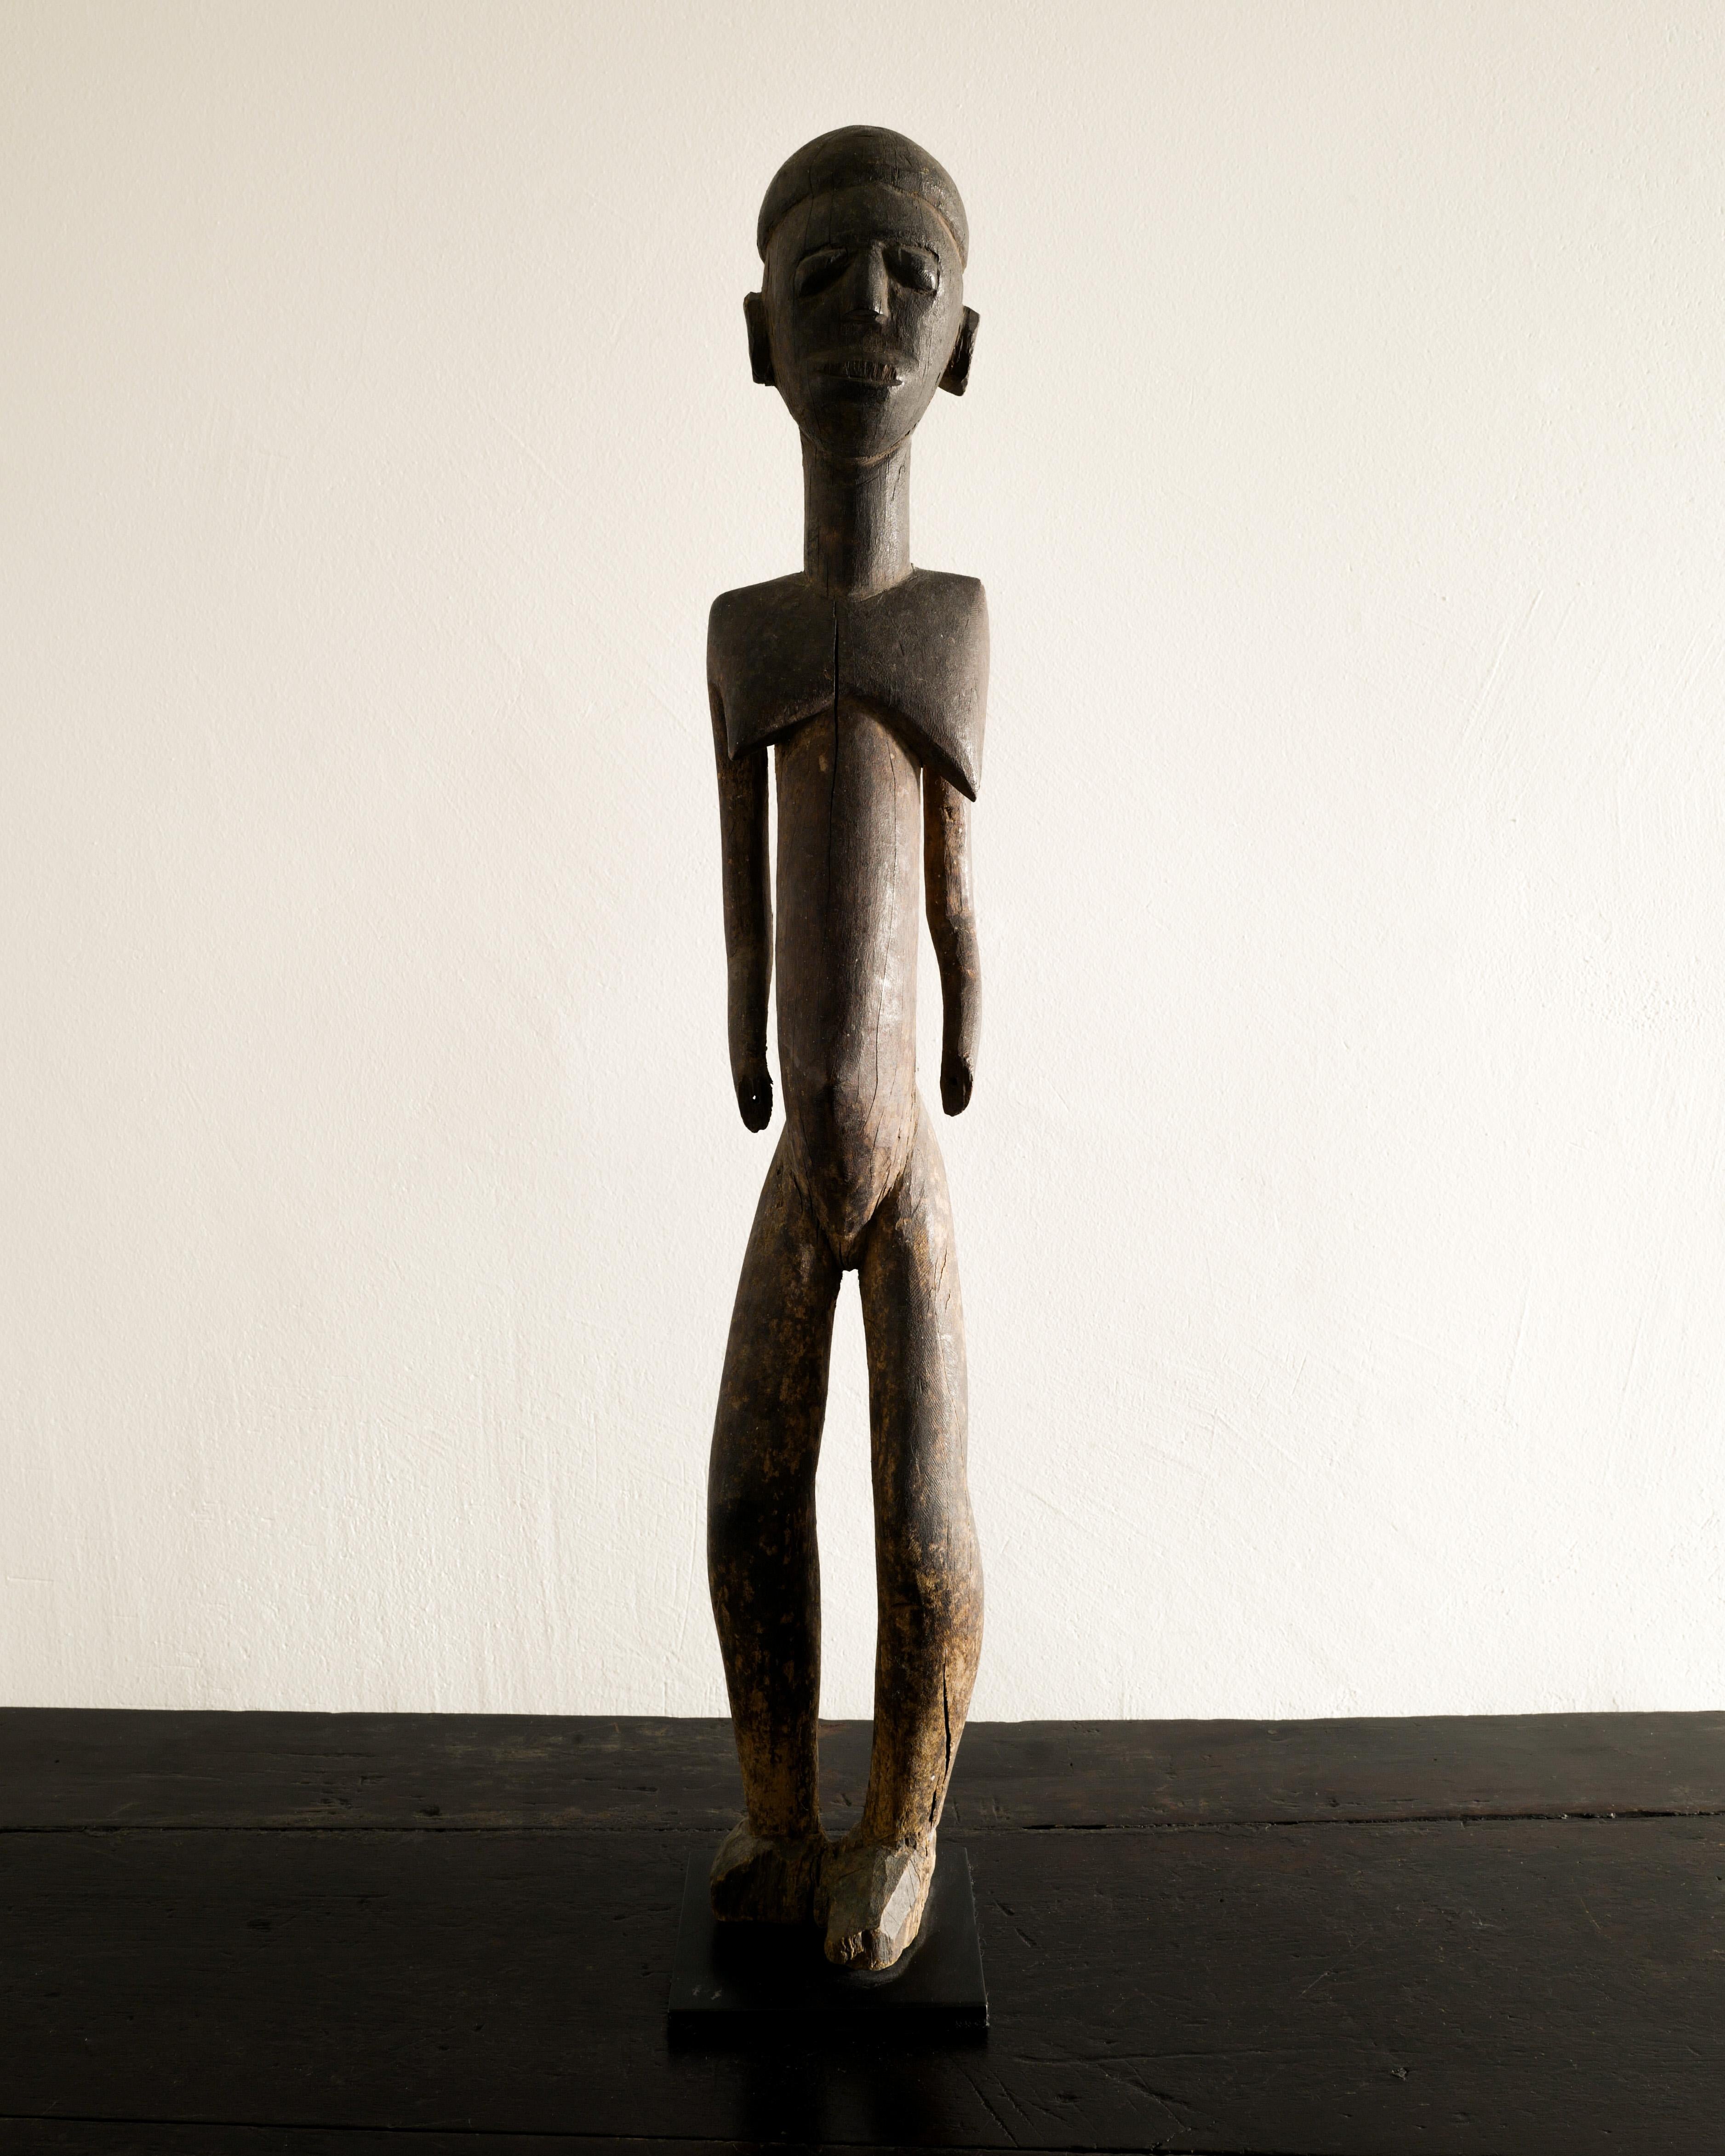 Seltene Holzskulptur der Lobi-Volksstammeskunst aus der Mitte des Jahrhunderts, hergestellt in Burkina Faso, Afrika, von einem anonymen Designer in den 1940er Jahren. In gutem Originalzustand. 

Abmessungen: H: 72 cm / 28.35